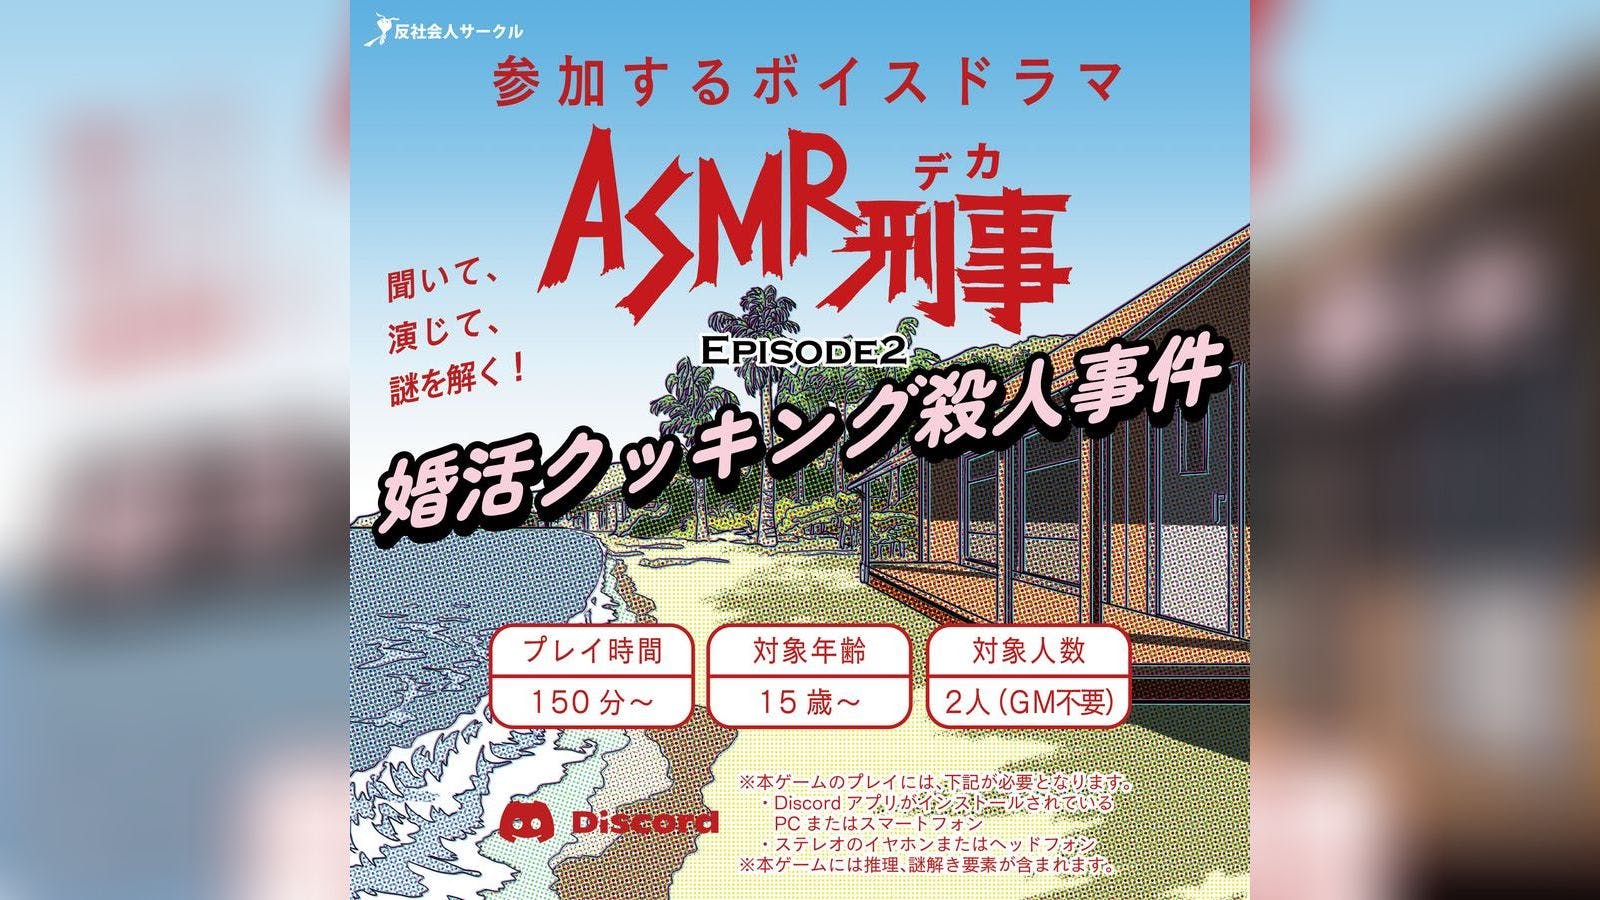 ASMR刑事 EPISODE 2〜婚活クッキング殺人事件〜